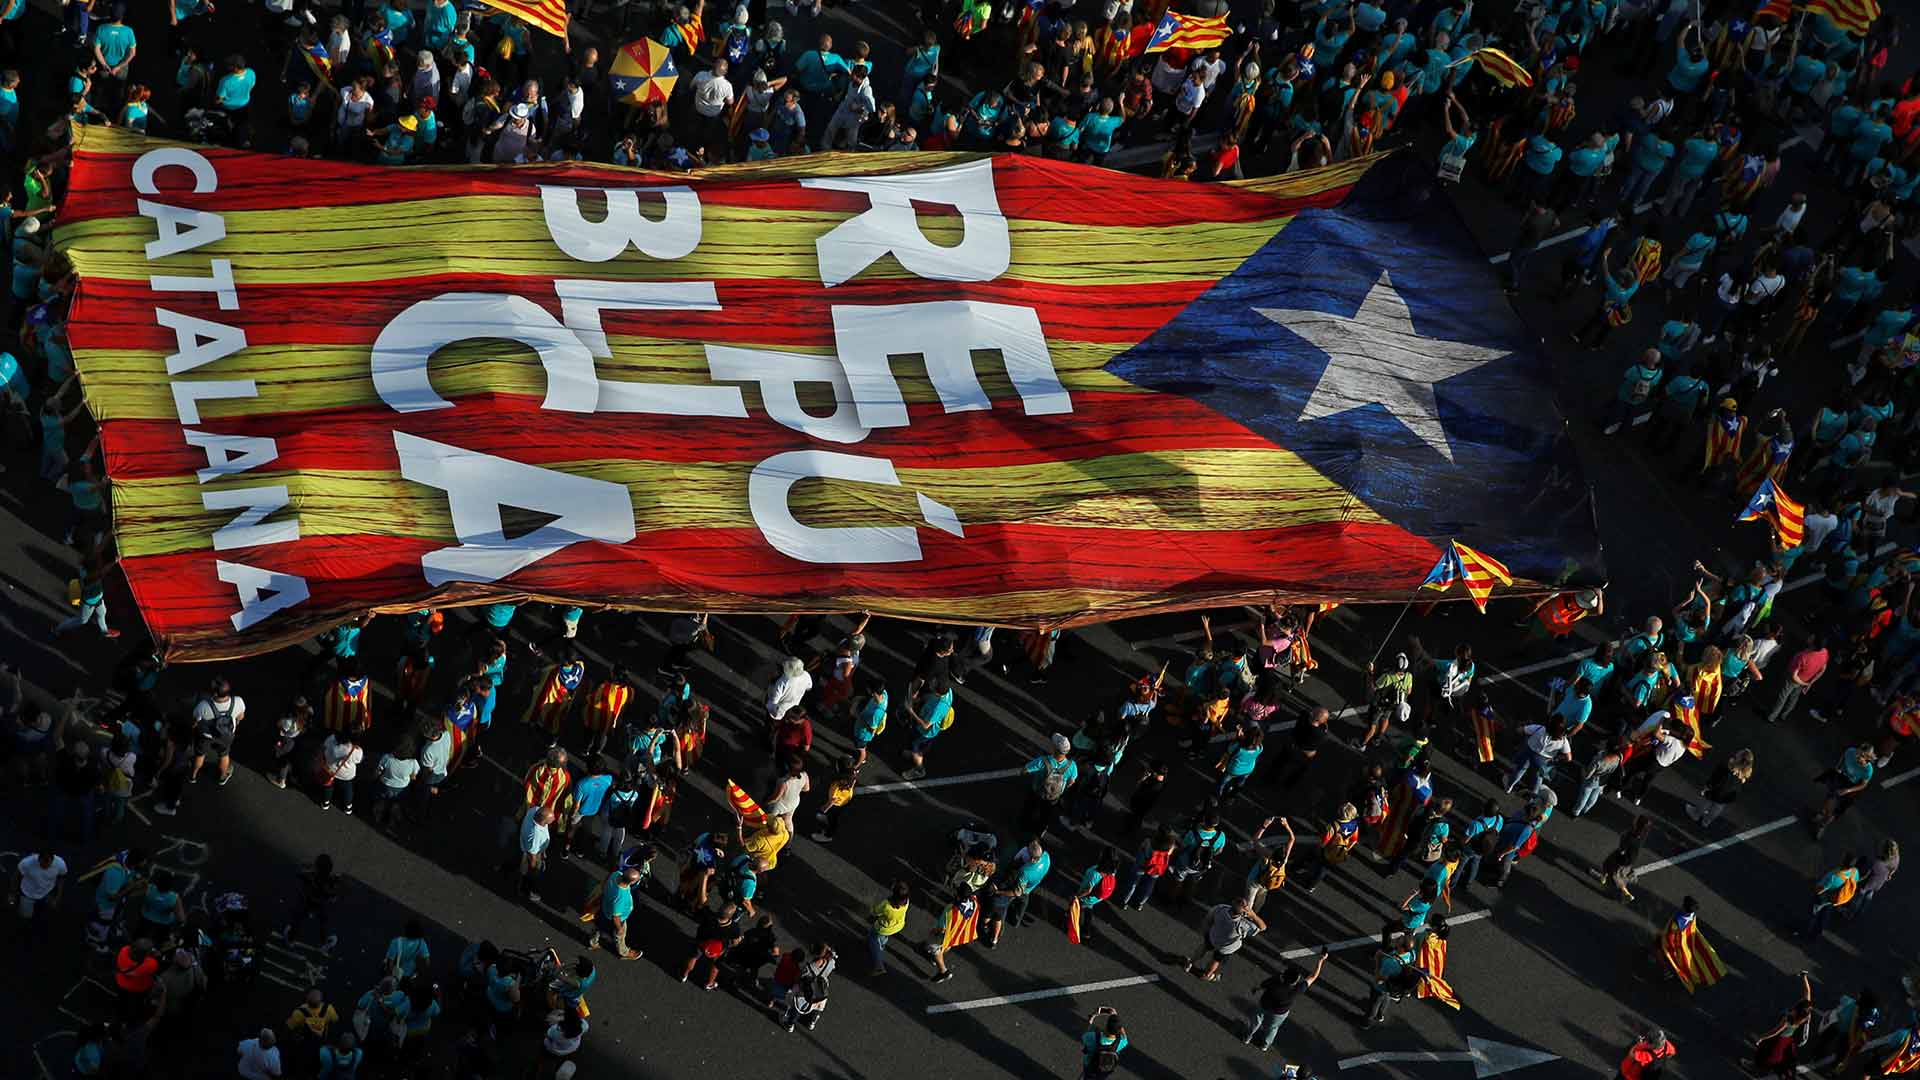 La Diada del "Arriba España"